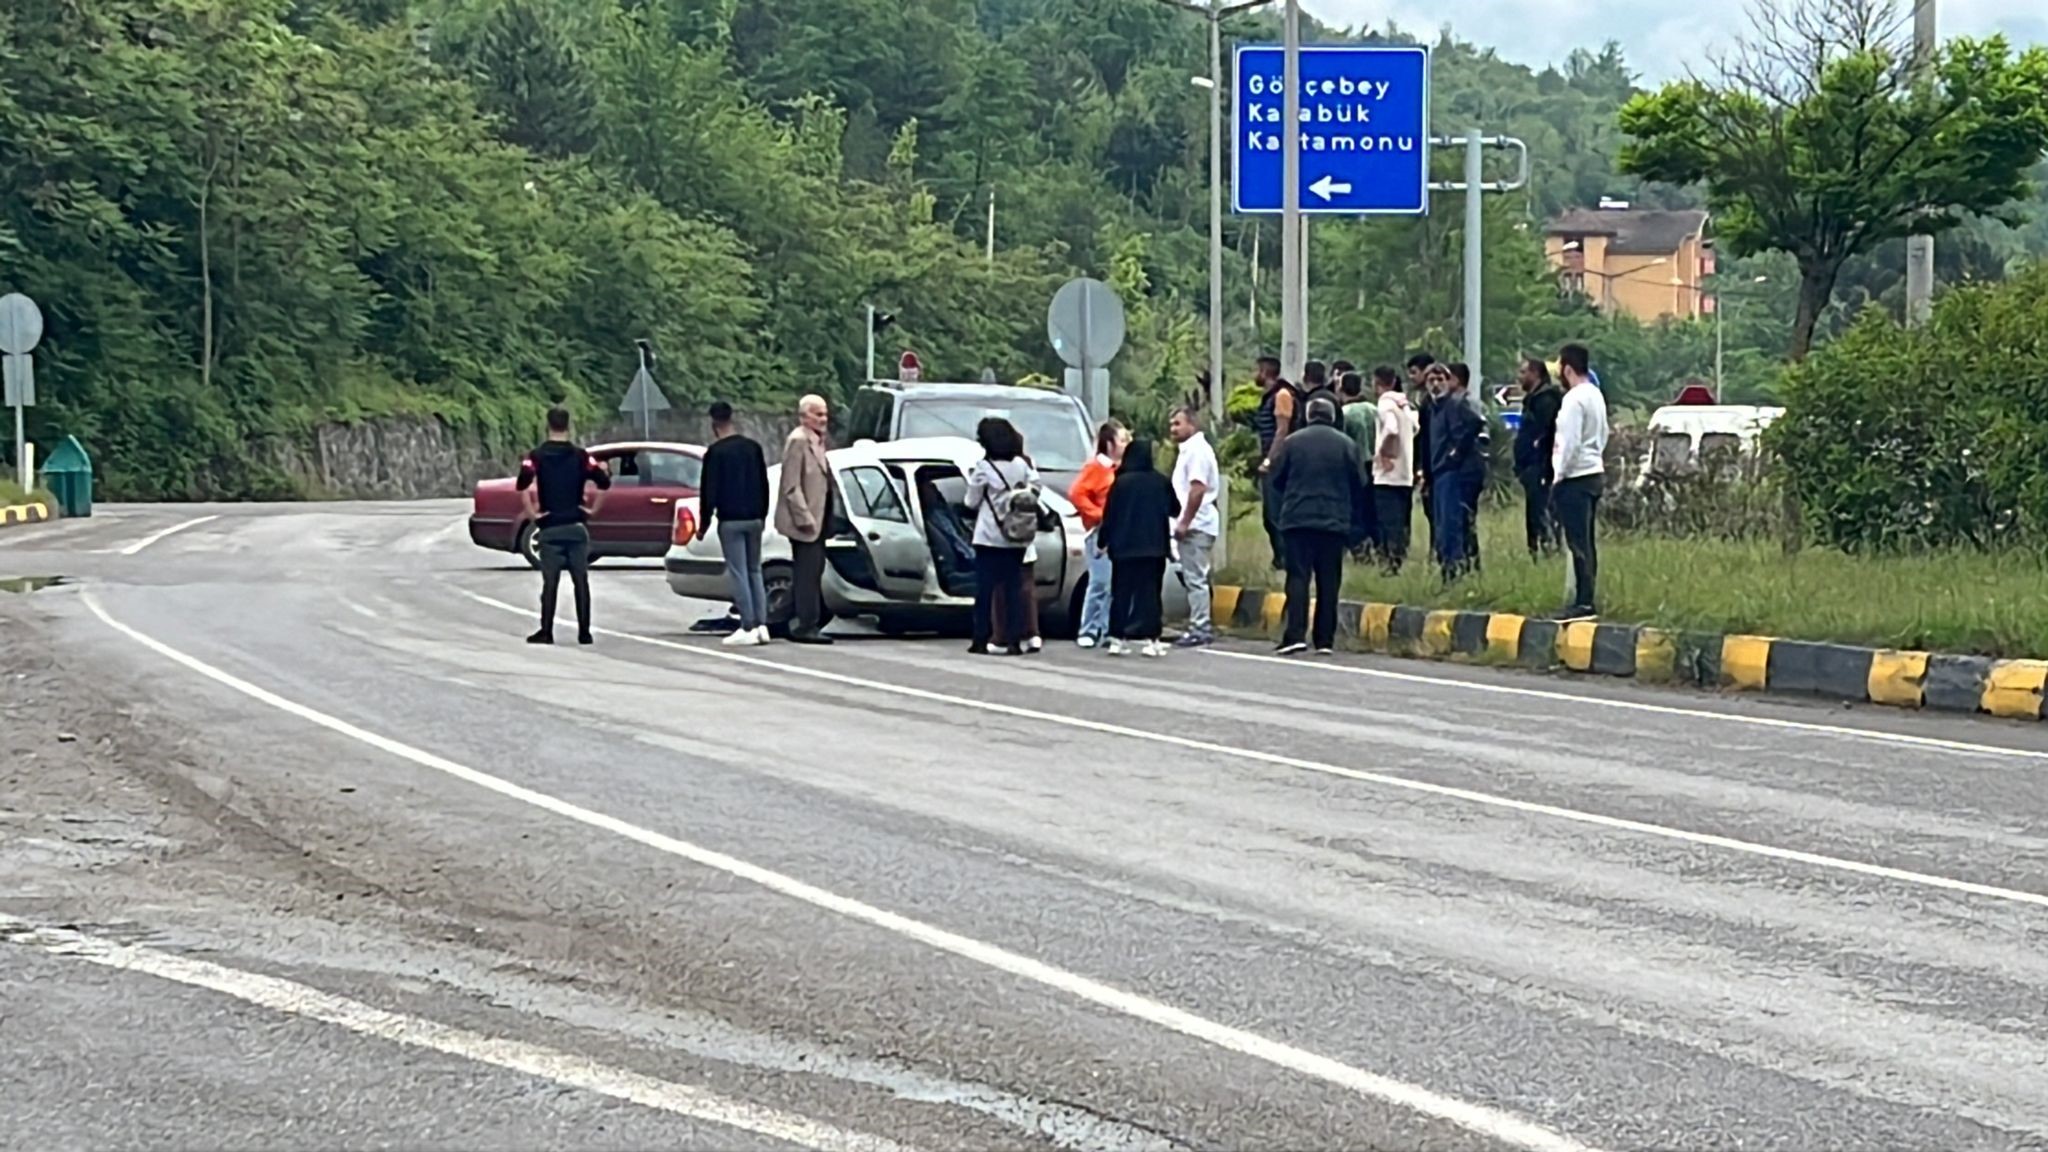 Zonguldak’ta kaza: 1 ölü, 1 yaralı